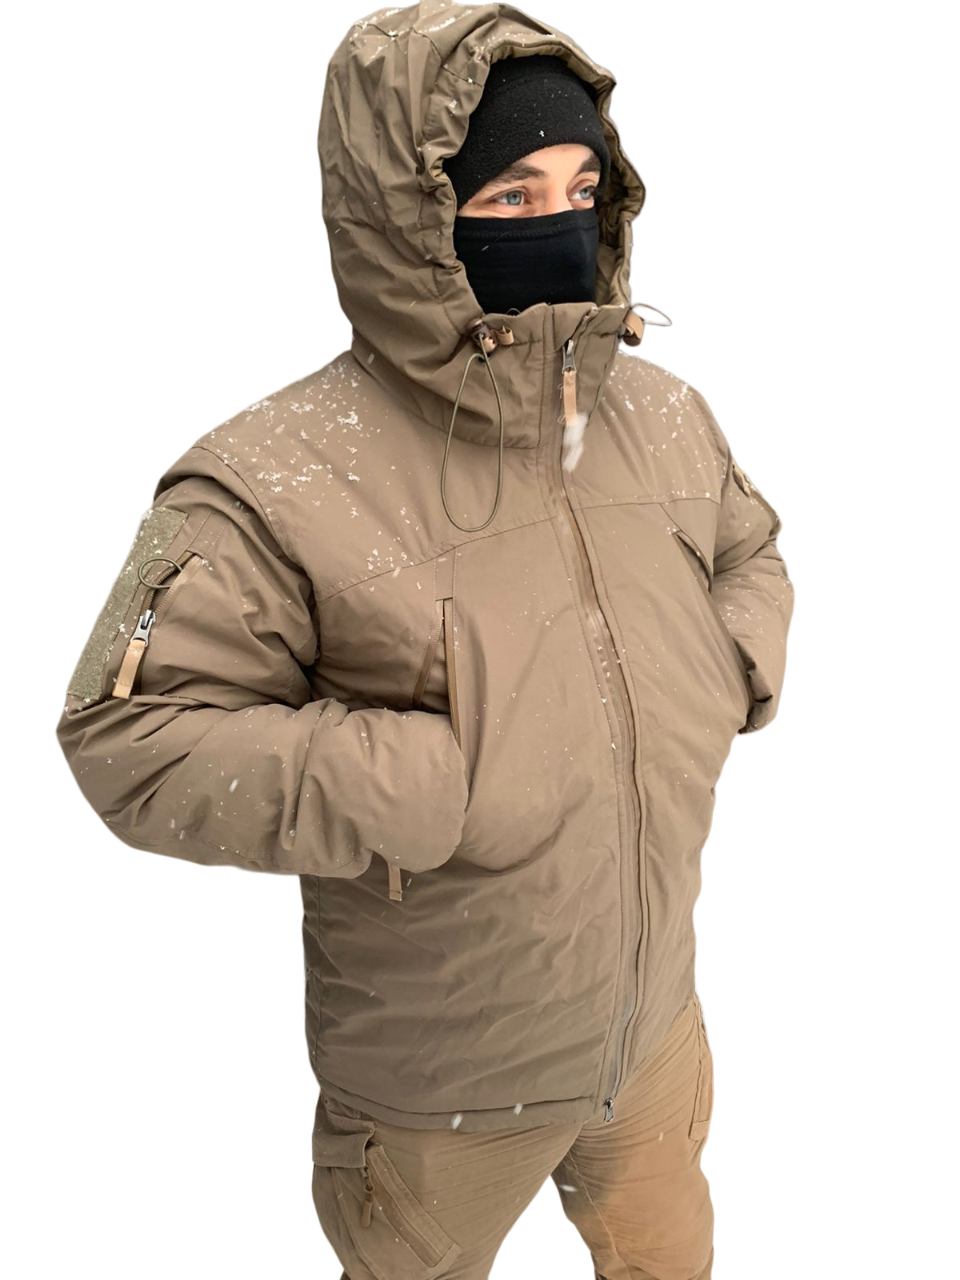 Зимняя куртка мужская Военсклад МСК carinthia бежевая S